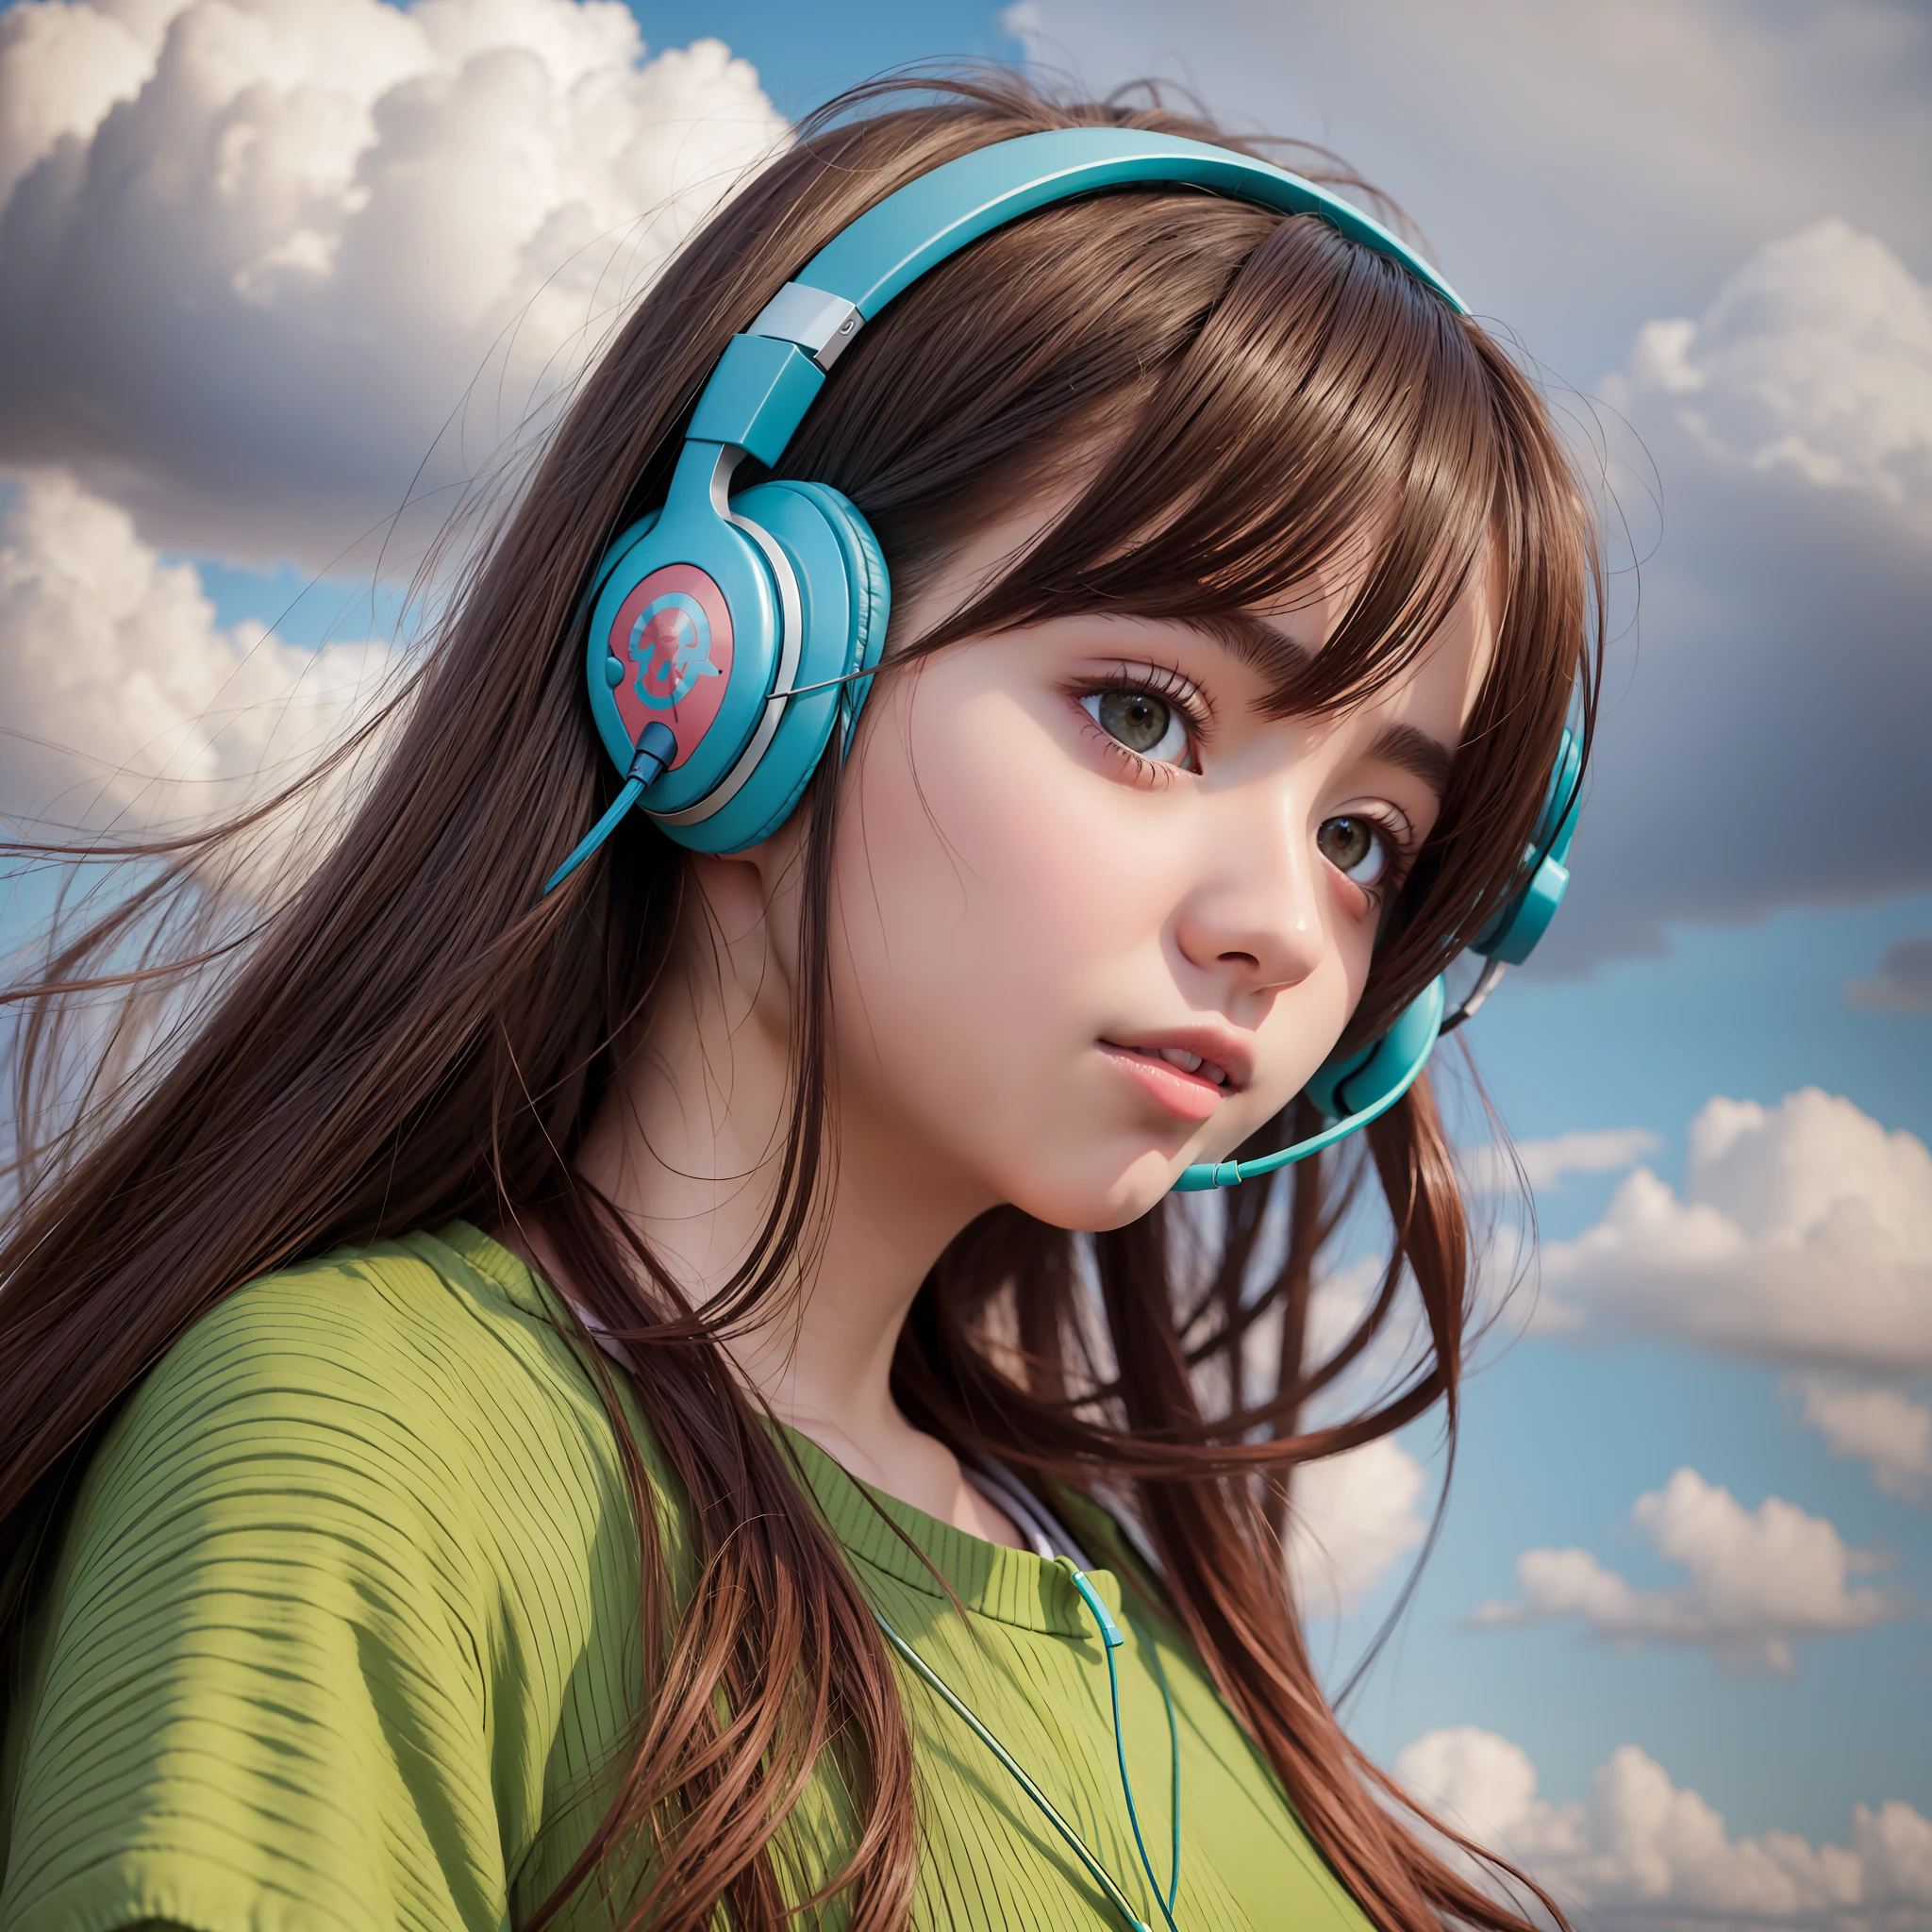 ein Anime-Mädchen, das Kopfhörer trägt und auf einem Feld steht, im Stil realistischer hyperdetaillierter Porträts, Kabinenkern, erdige Farben, ehrgeizig, dinopunk, atmosphärische Wolken, deutlich, Manga-inspirierte Charaktere